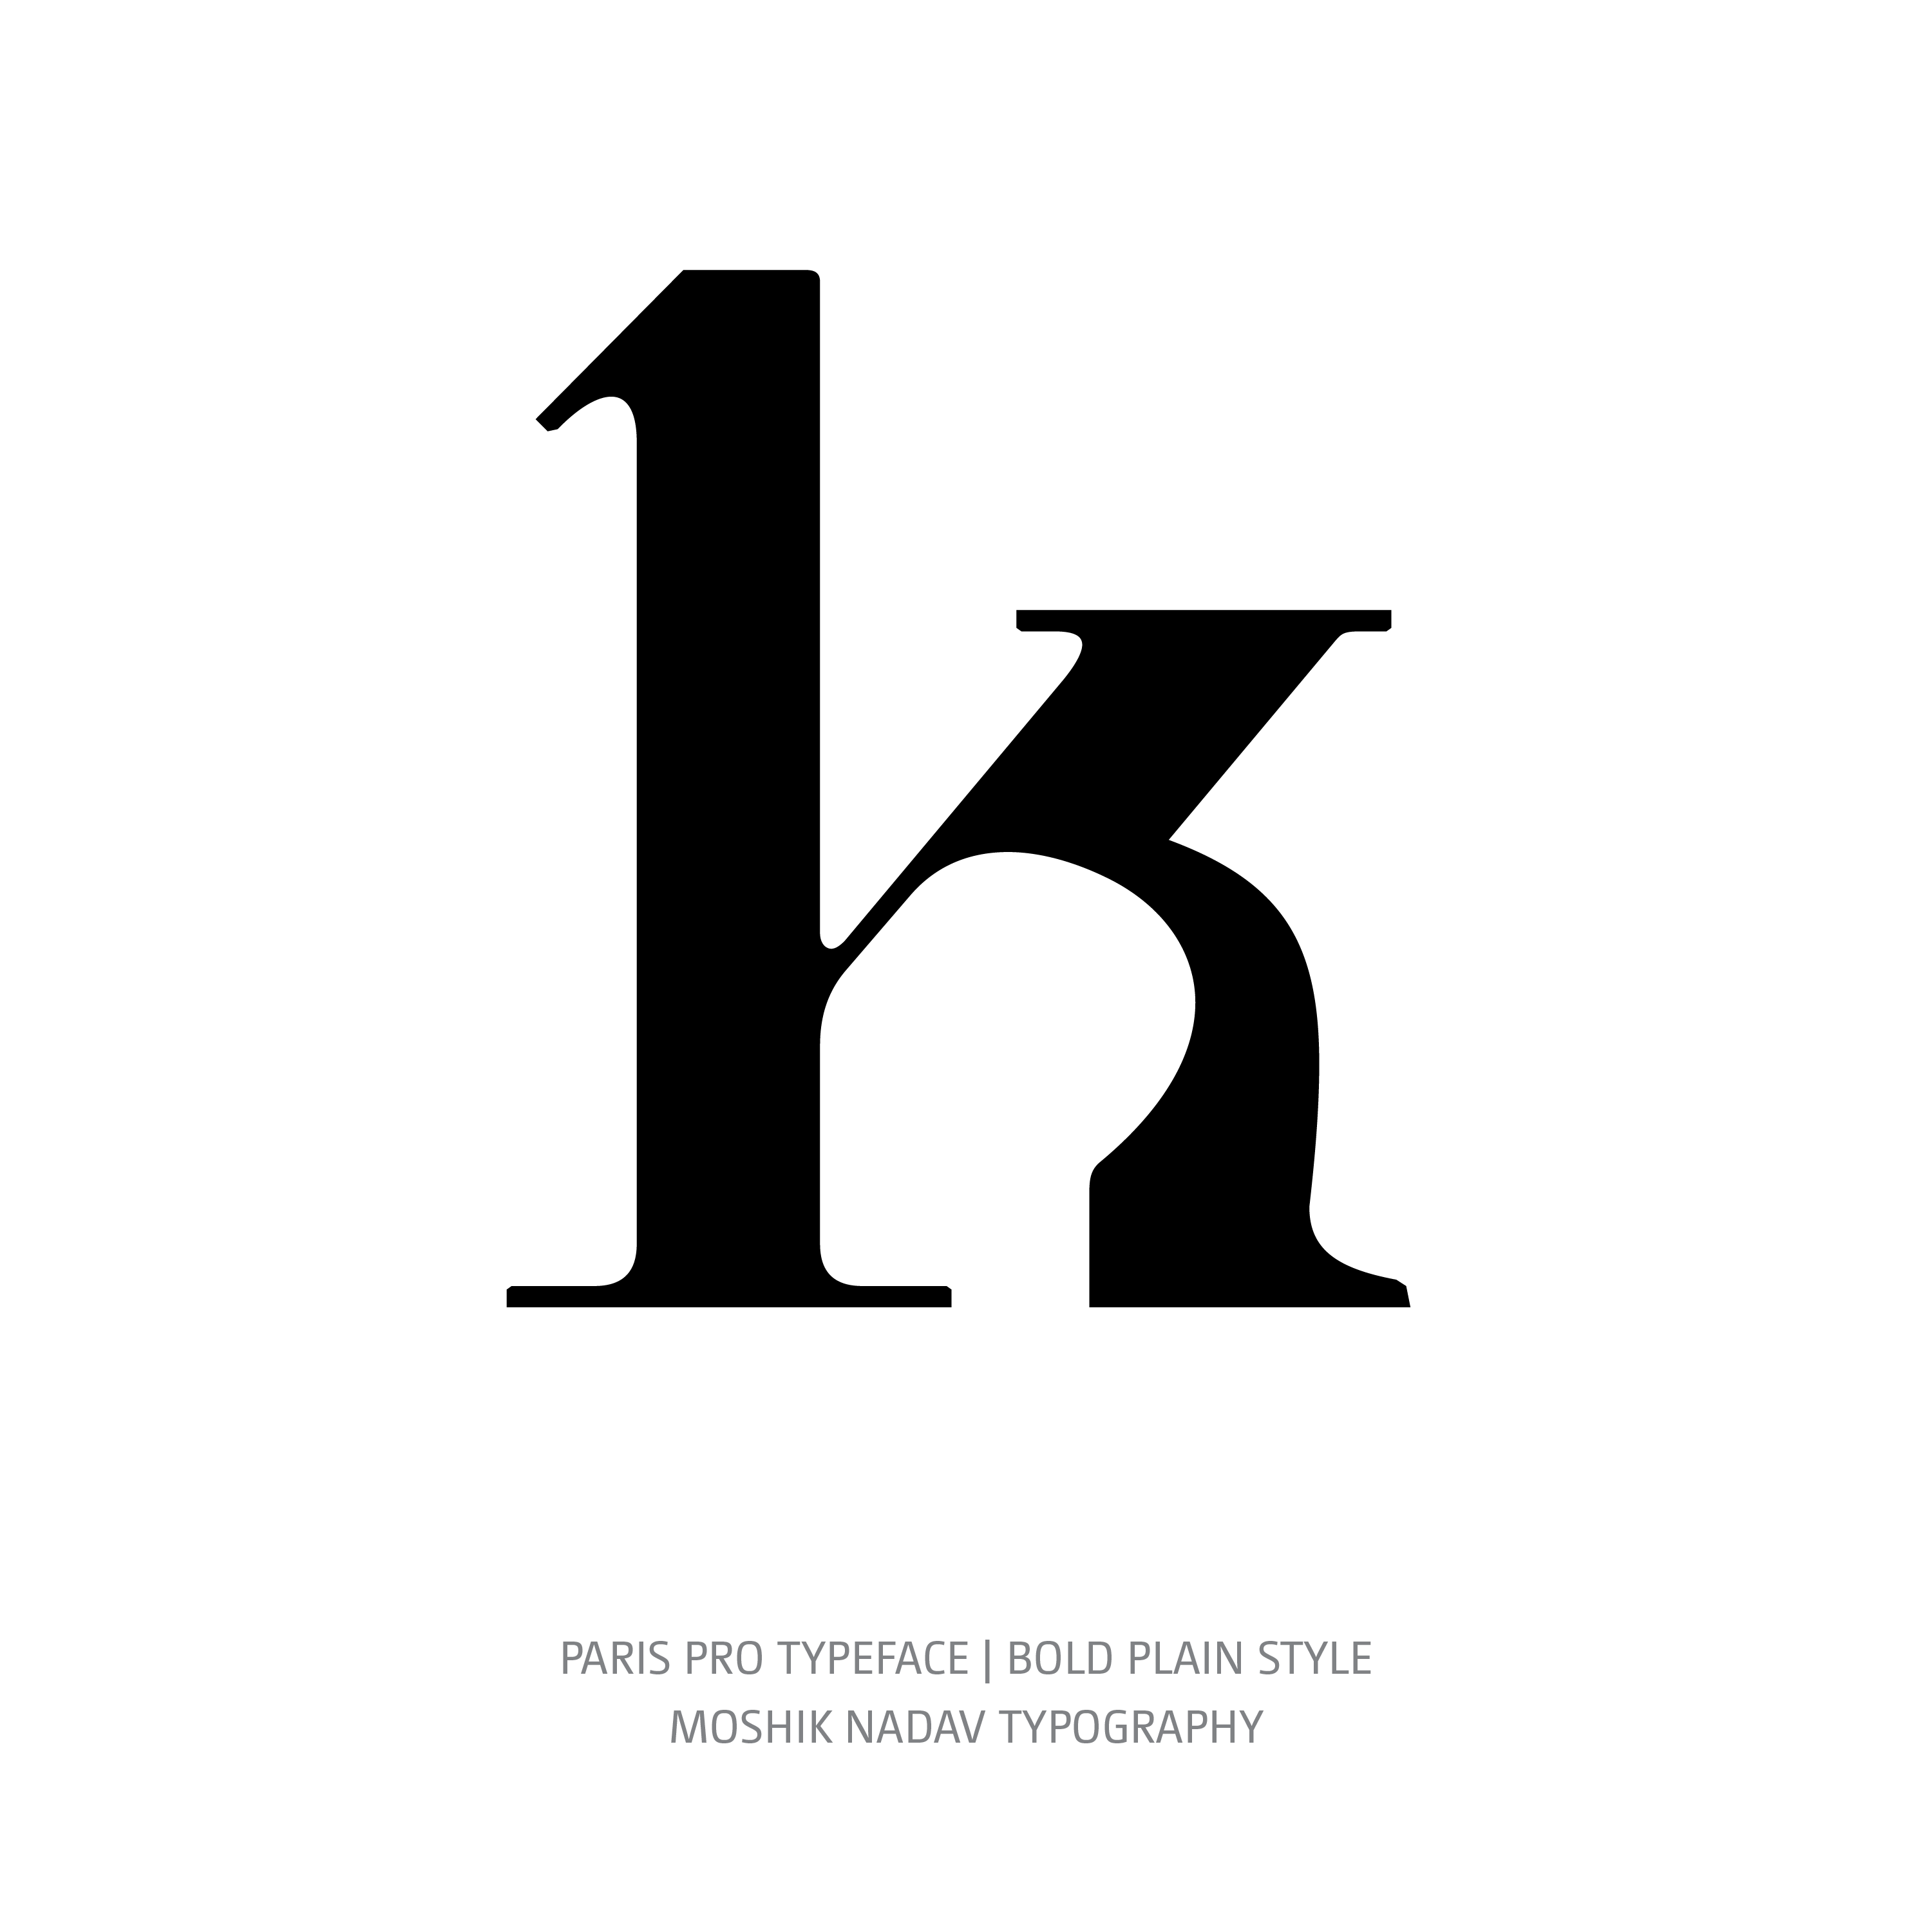 Paris Pro Typeface Bold Plain k